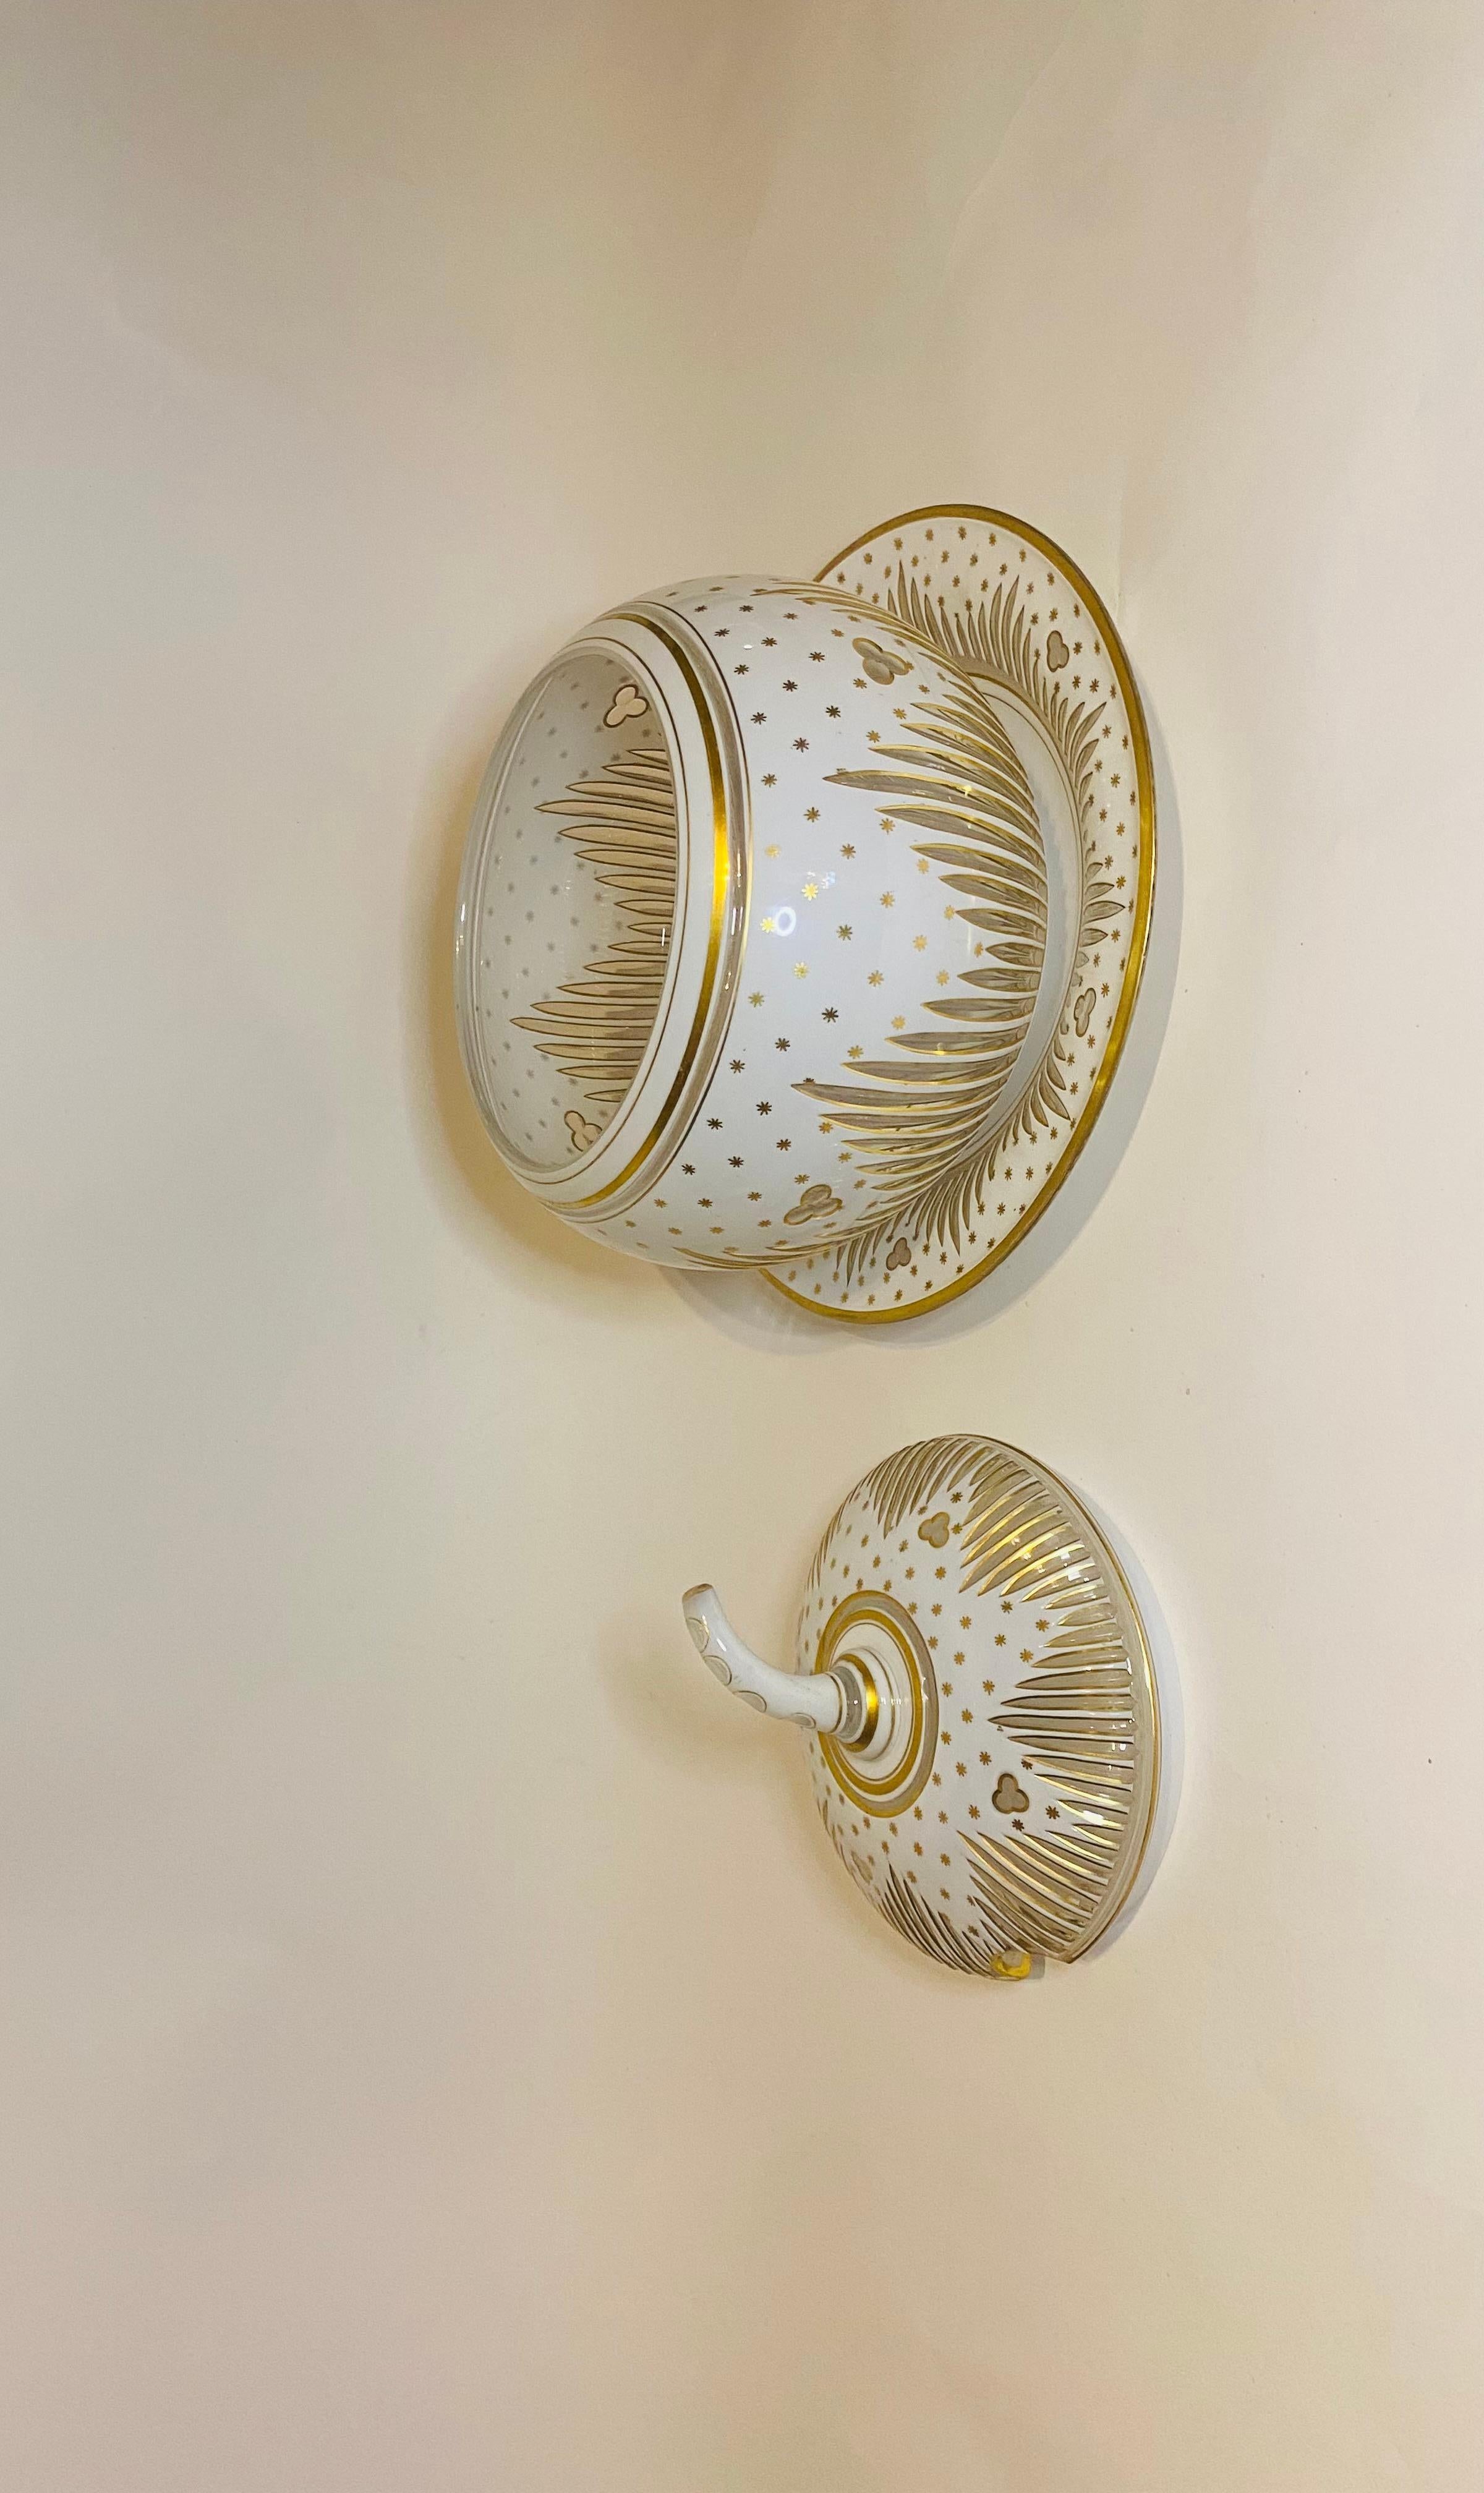 Wie schön und elegant ist diese einzigartige Punschschale, Terrine oder Tafelaufsatz. Das kürbisförmige und schwere Stück zeichnet sich durch ein kunstvolles Design aus weißem Glas mit 24-karätigem Golddekor aus. Beeindruckend und gewichtig. Es ist